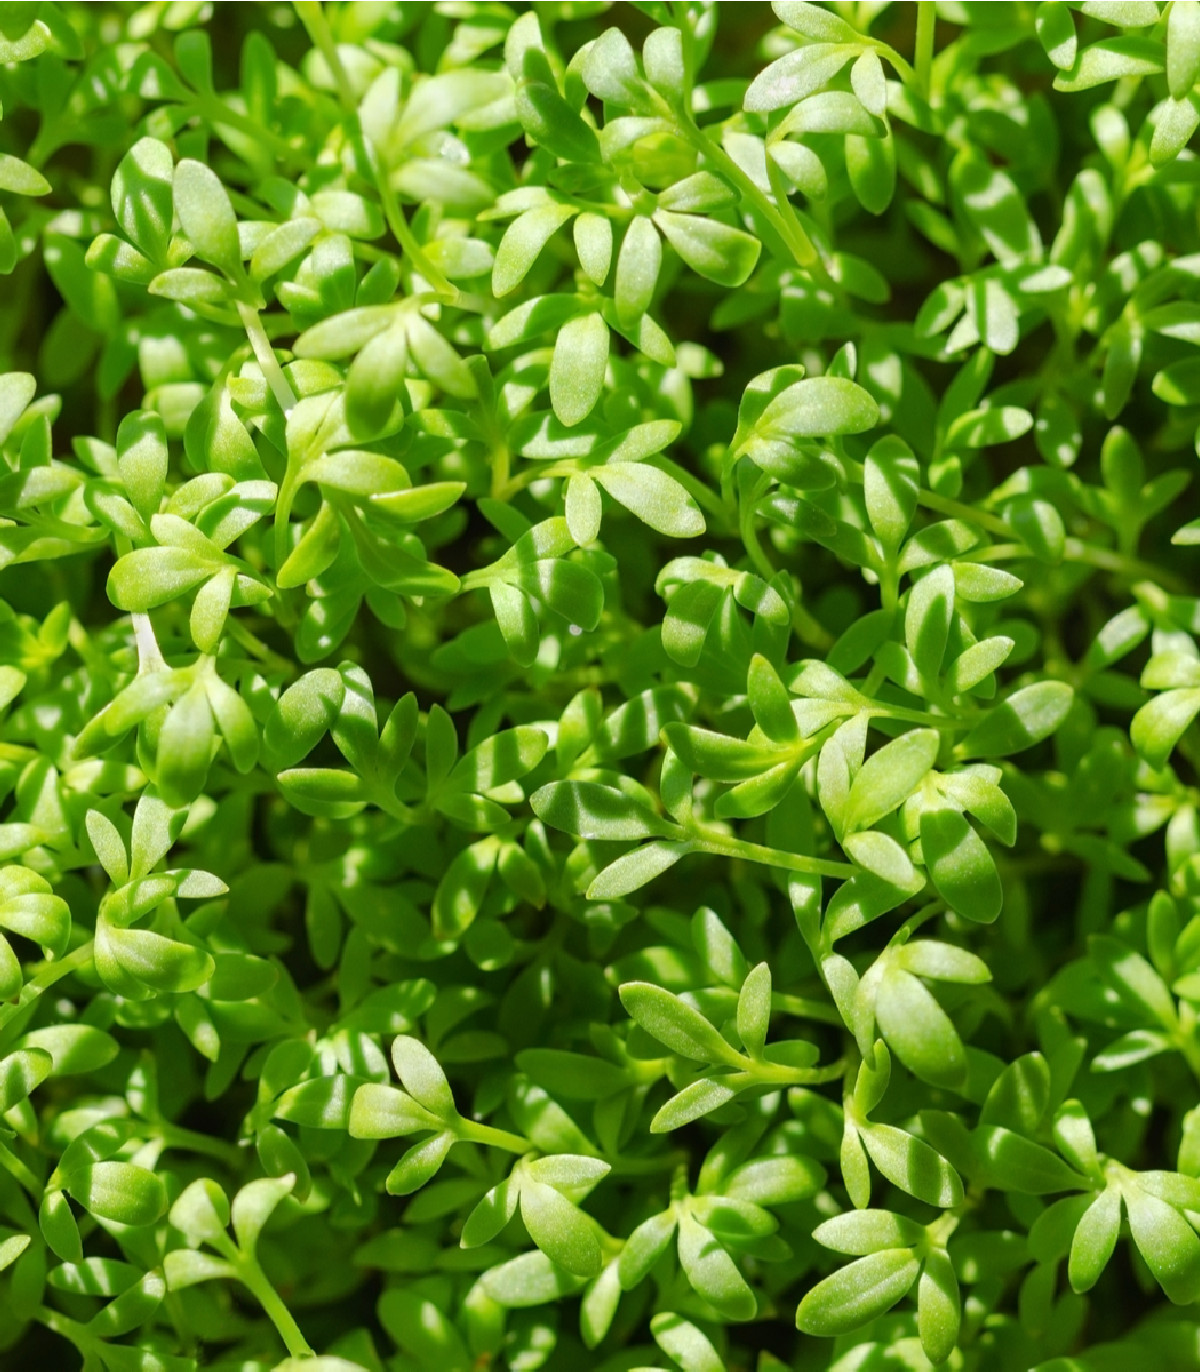 BIO Žerucha Kresso - Lepidium sativum - bio semená - 150 ks